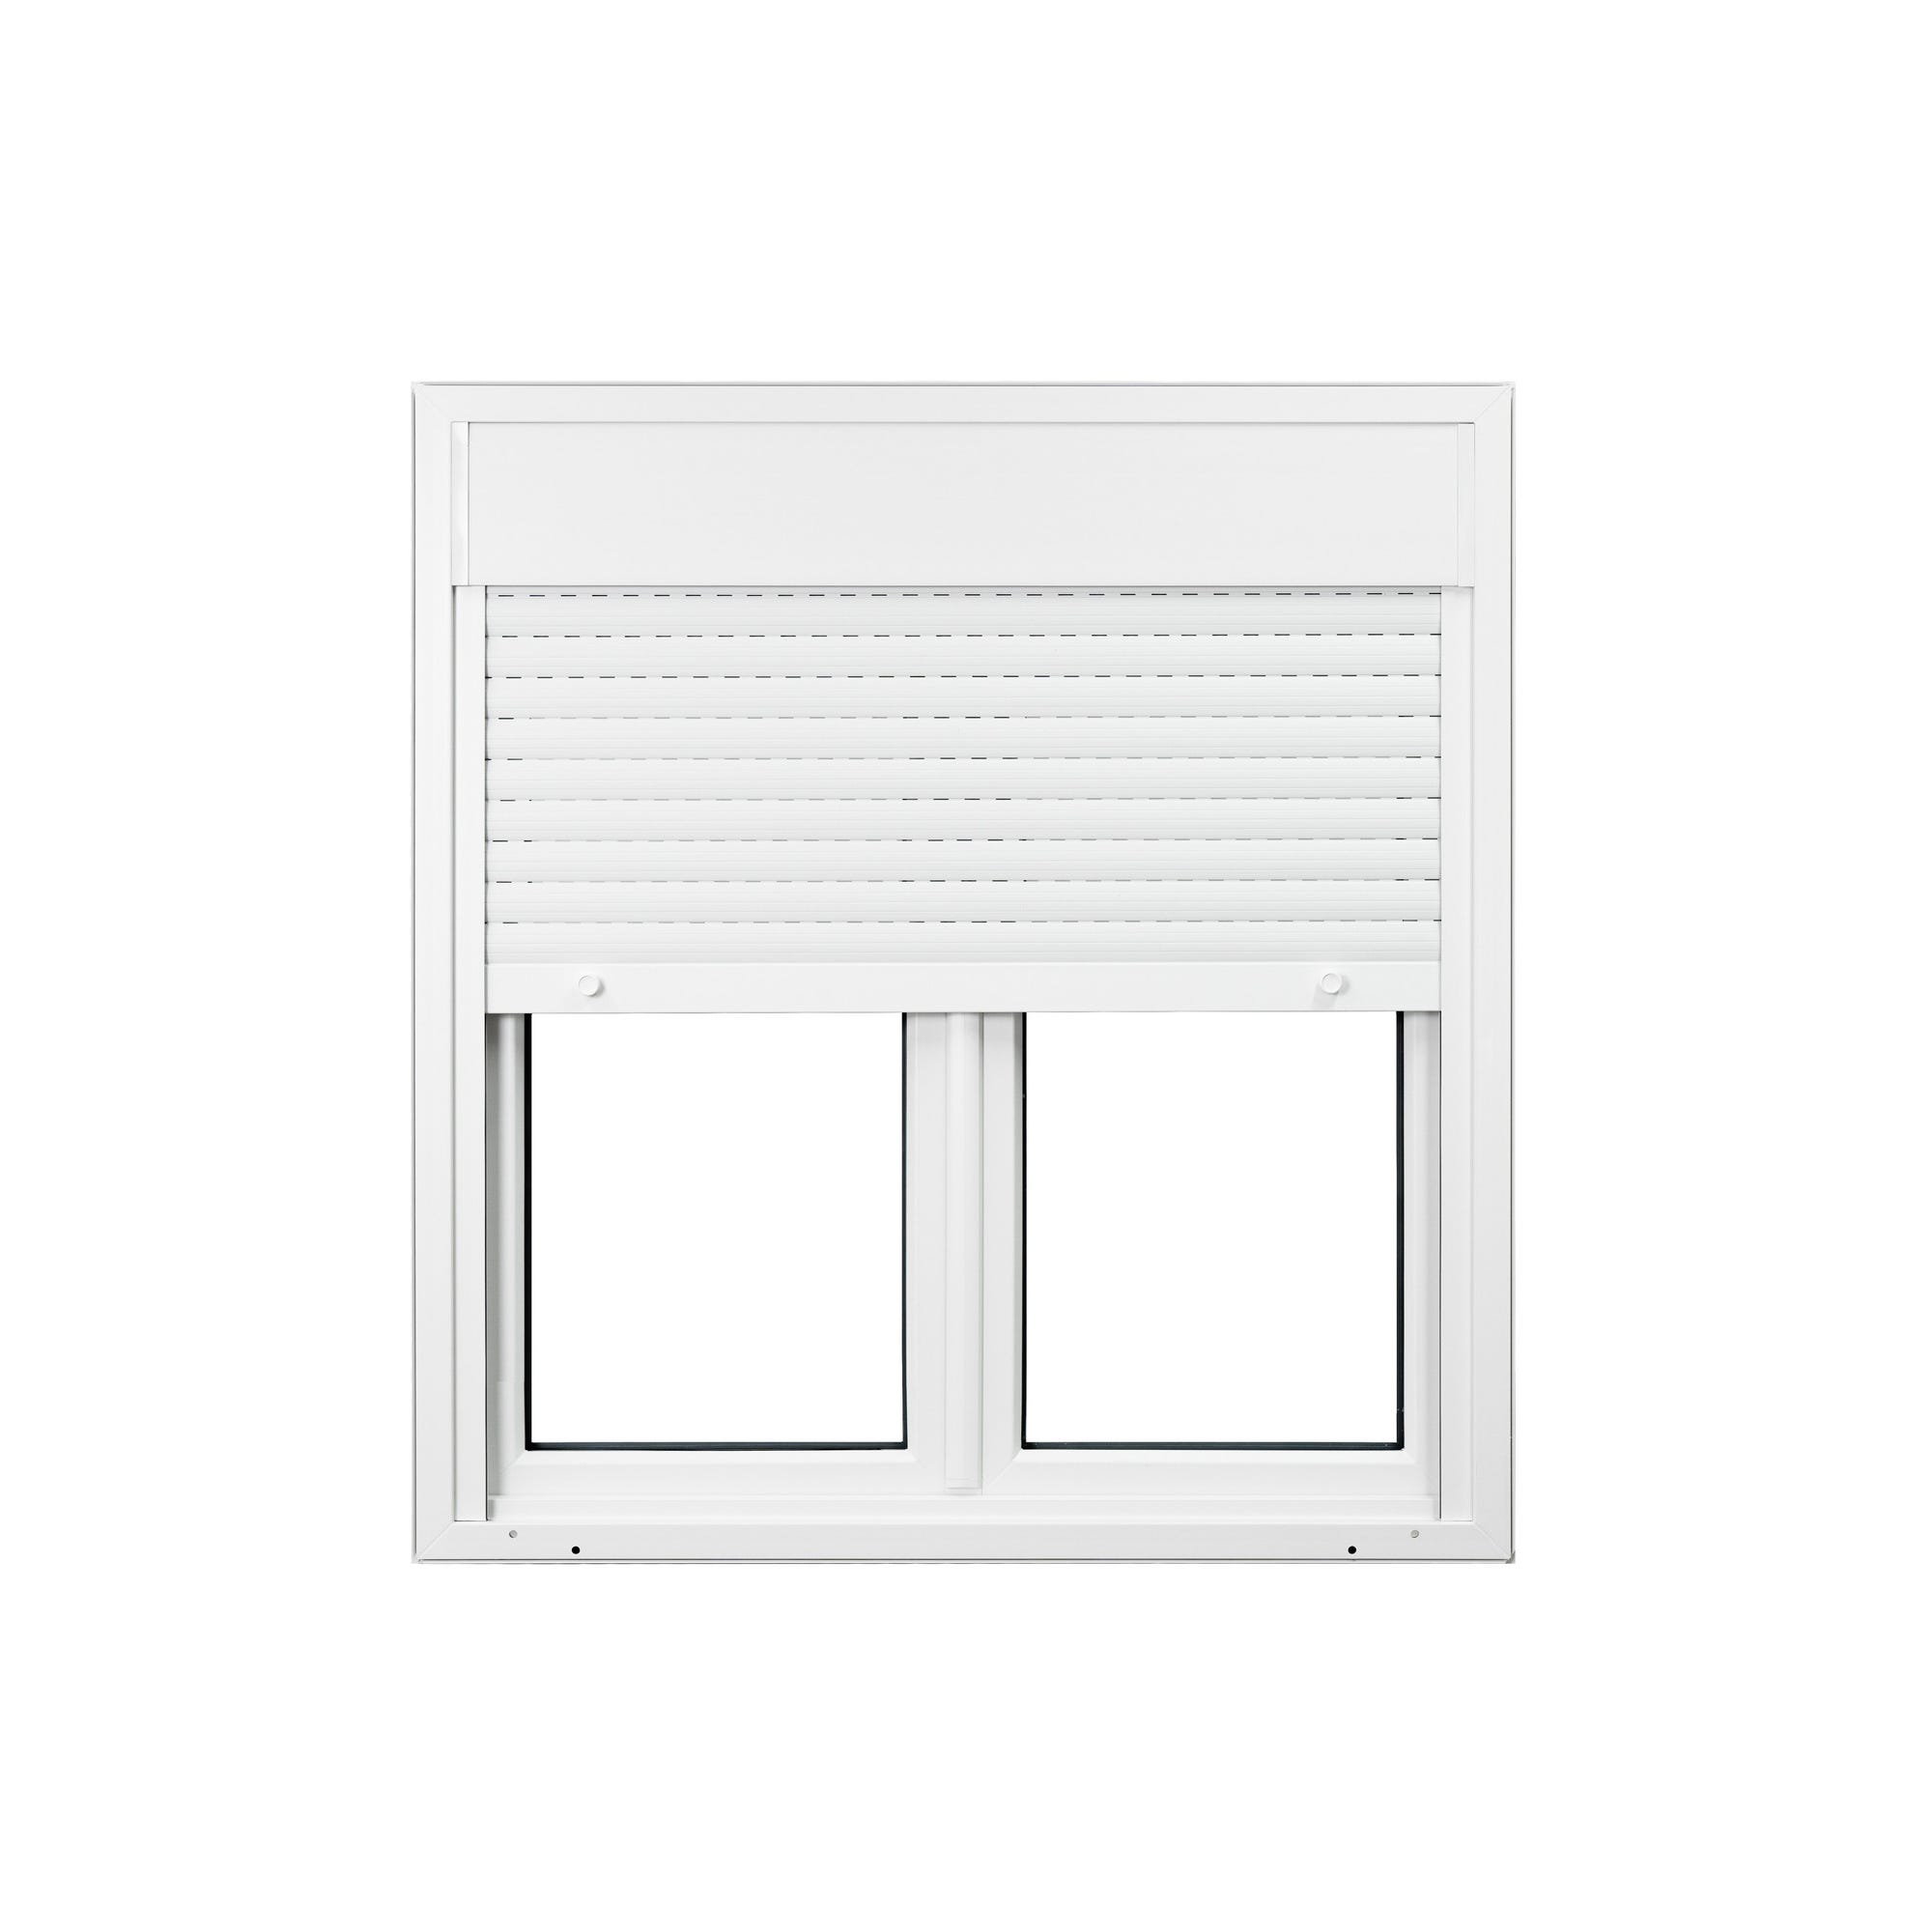 Fenêtre PVC avec volet roulant intégré monobloc Ob 2 vantaux H.95 x L.120 cm - GROSFILLEX 2